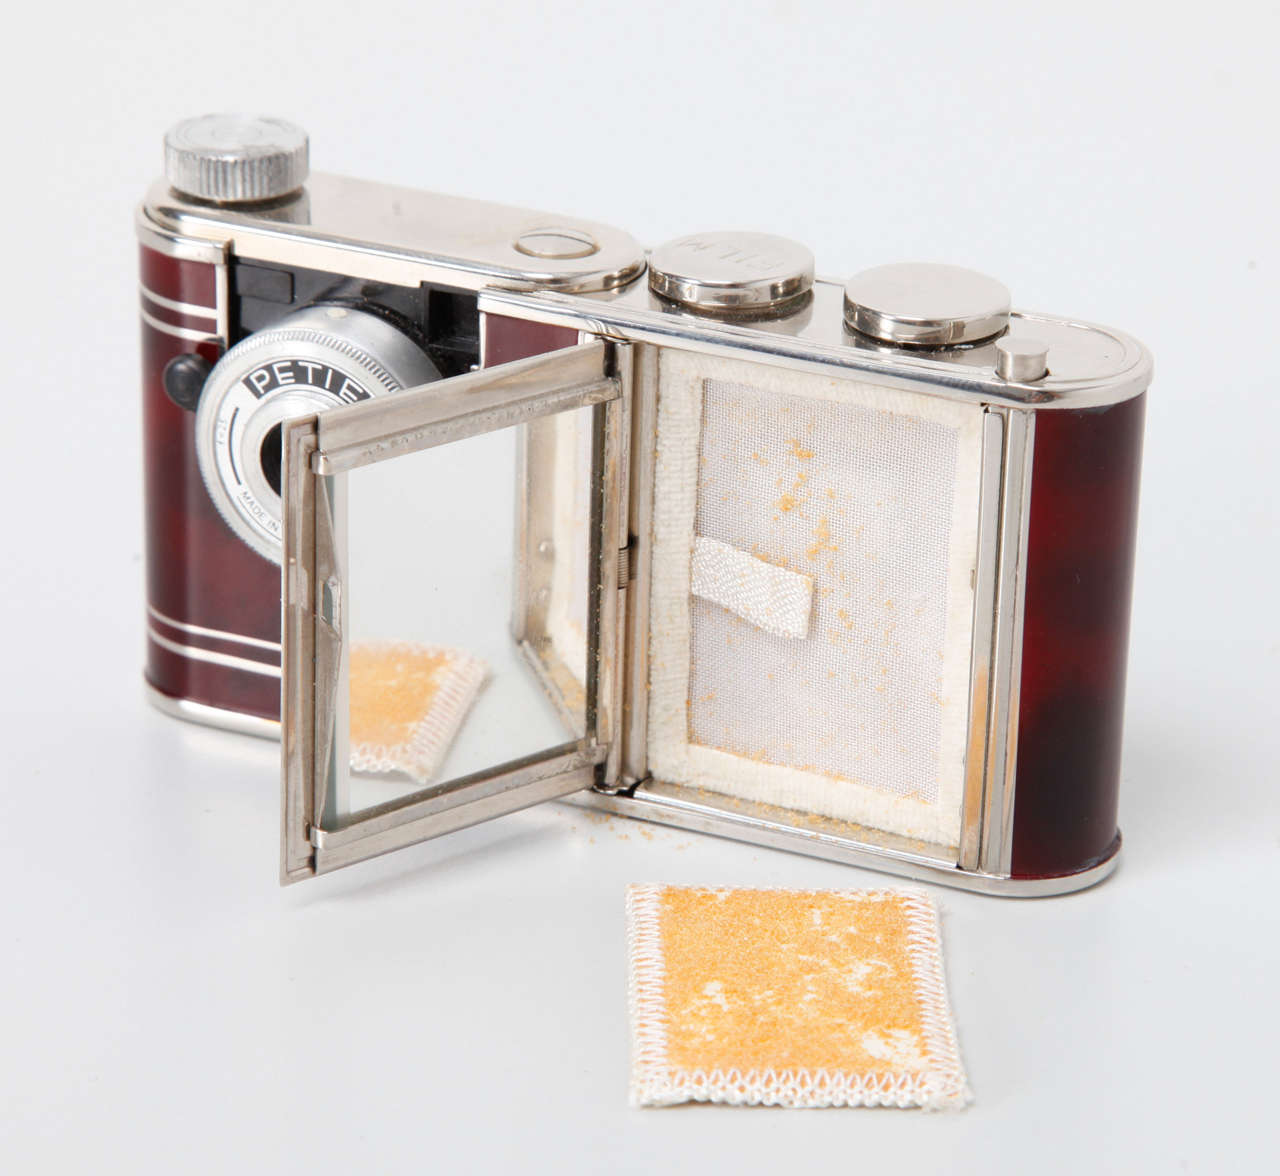 German Walter Kunik Petie Vanity Camera and Make-up Kit.